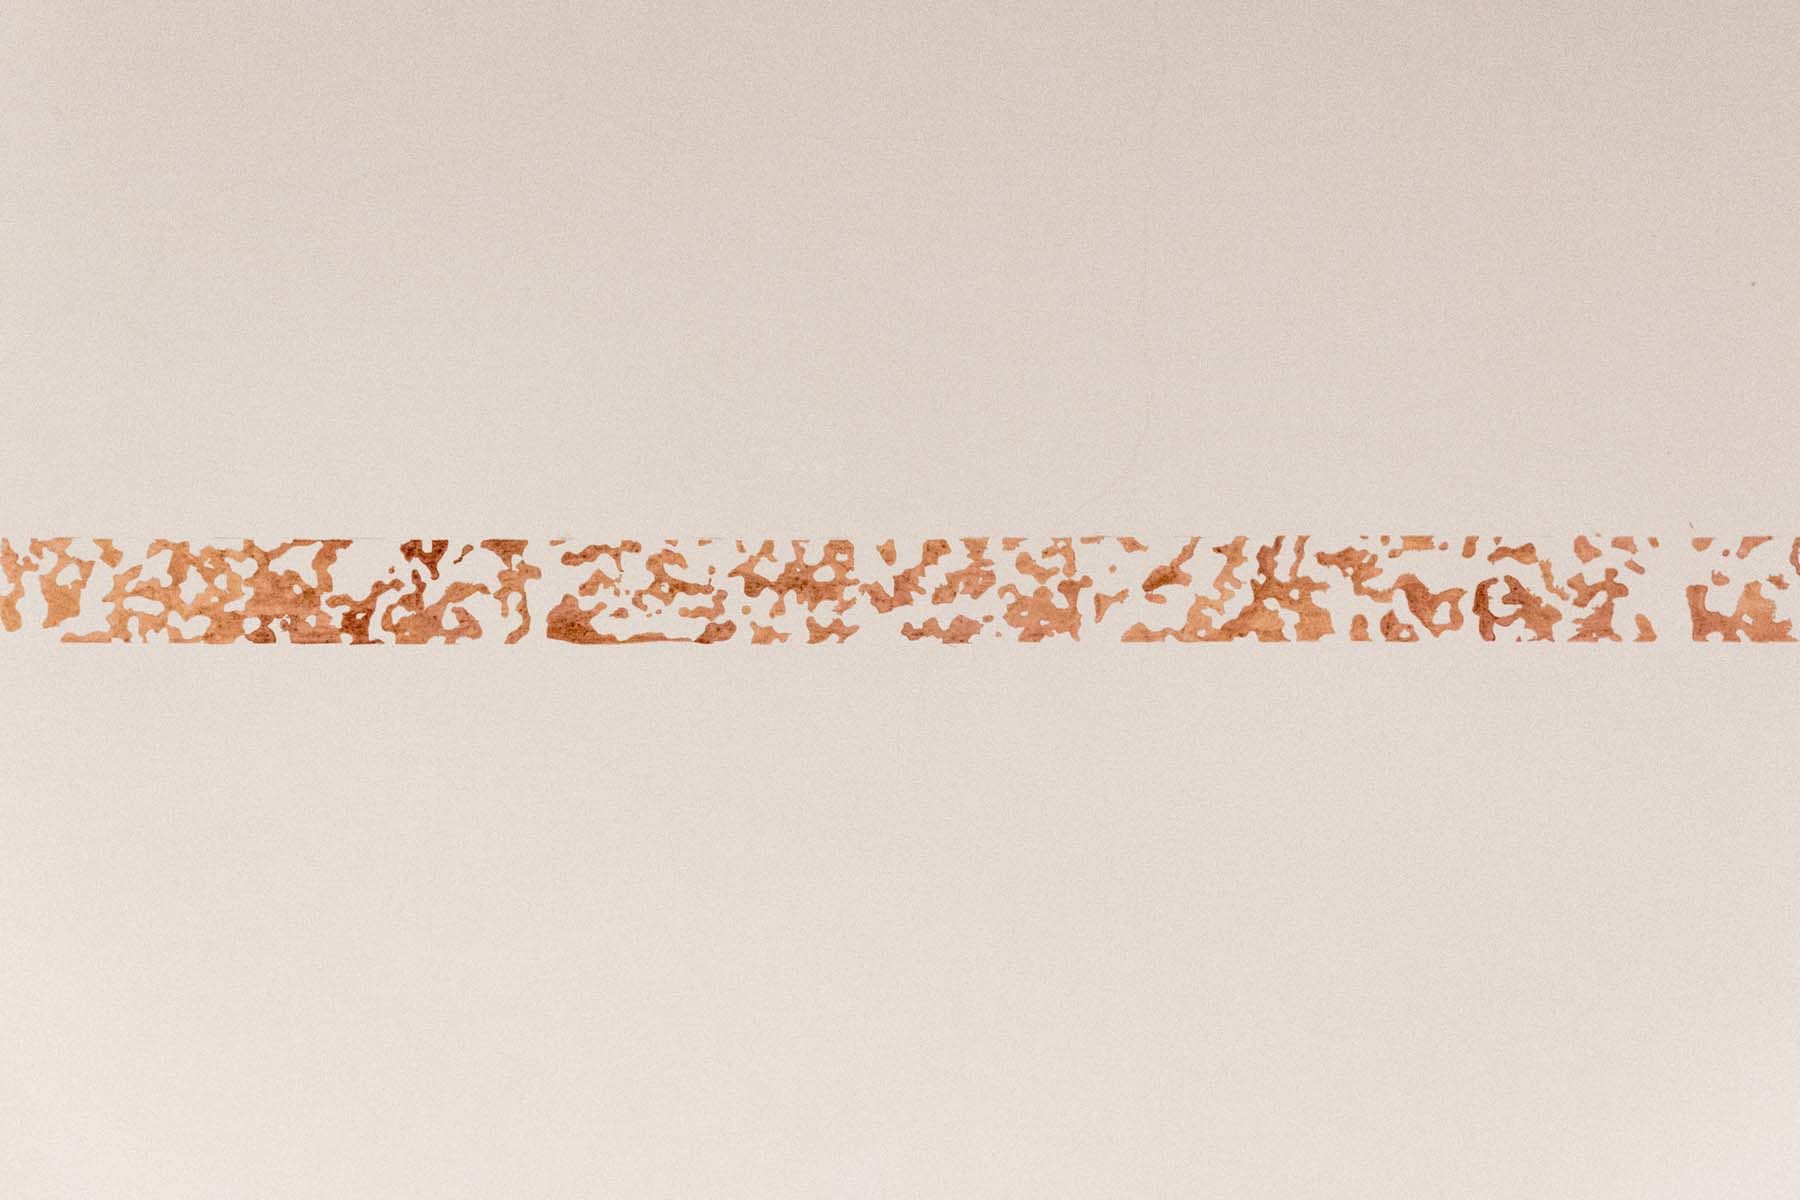 Giovanni Morbin, Non sto più nella pelle (det.), 2018, blood painted wall, installation, h. 5 cm, ph. Nico Covre